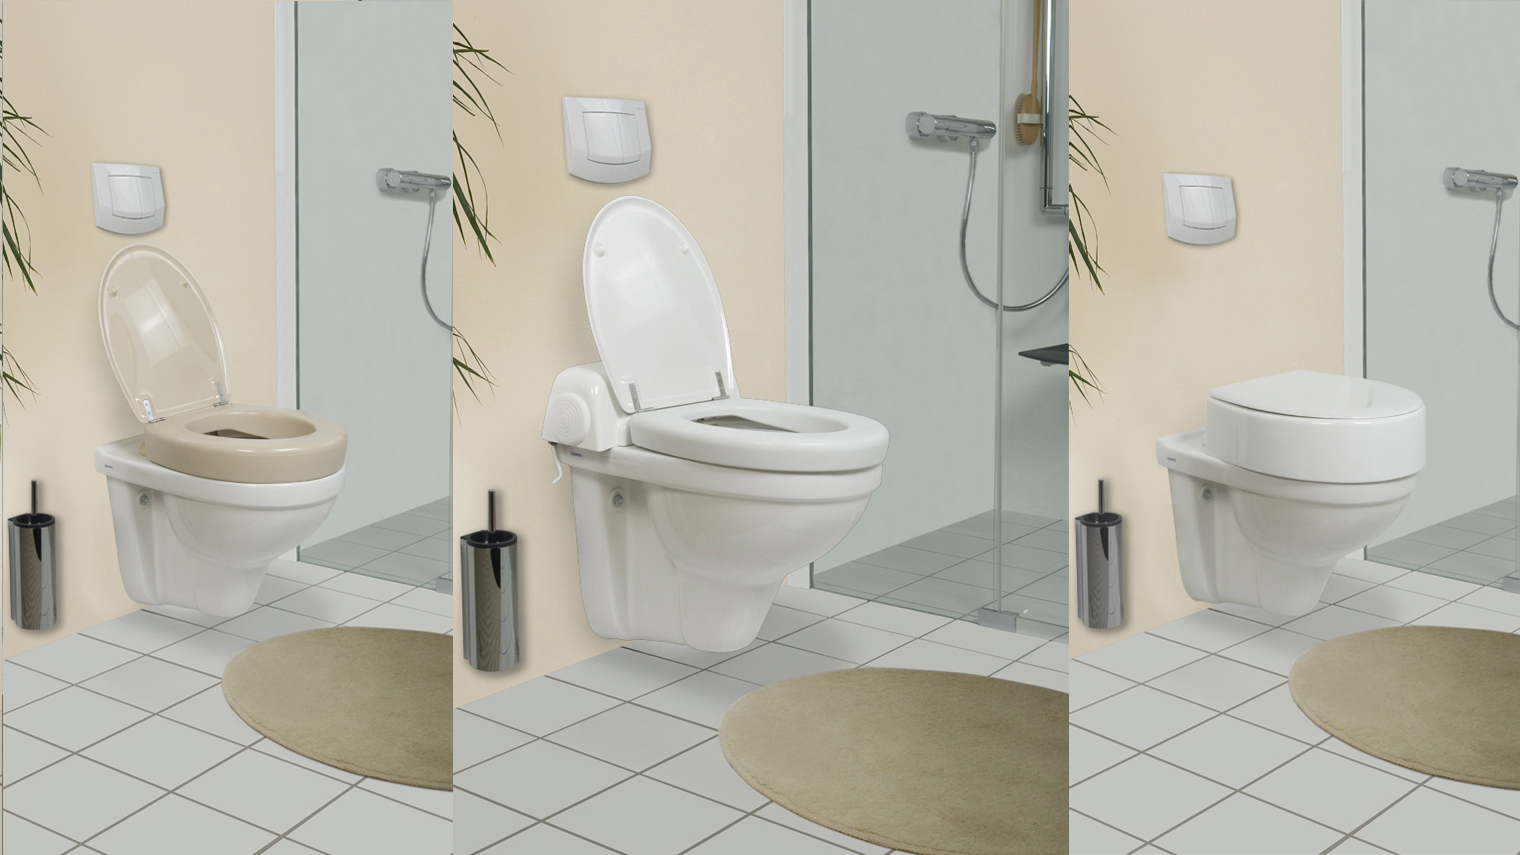 Das mittlere Bild zeigt ein Dusch-WC mit Toilettensitzerhöhung, links und rechts gibt es unterschiedlich hohe Toilettensitzerhöhungen